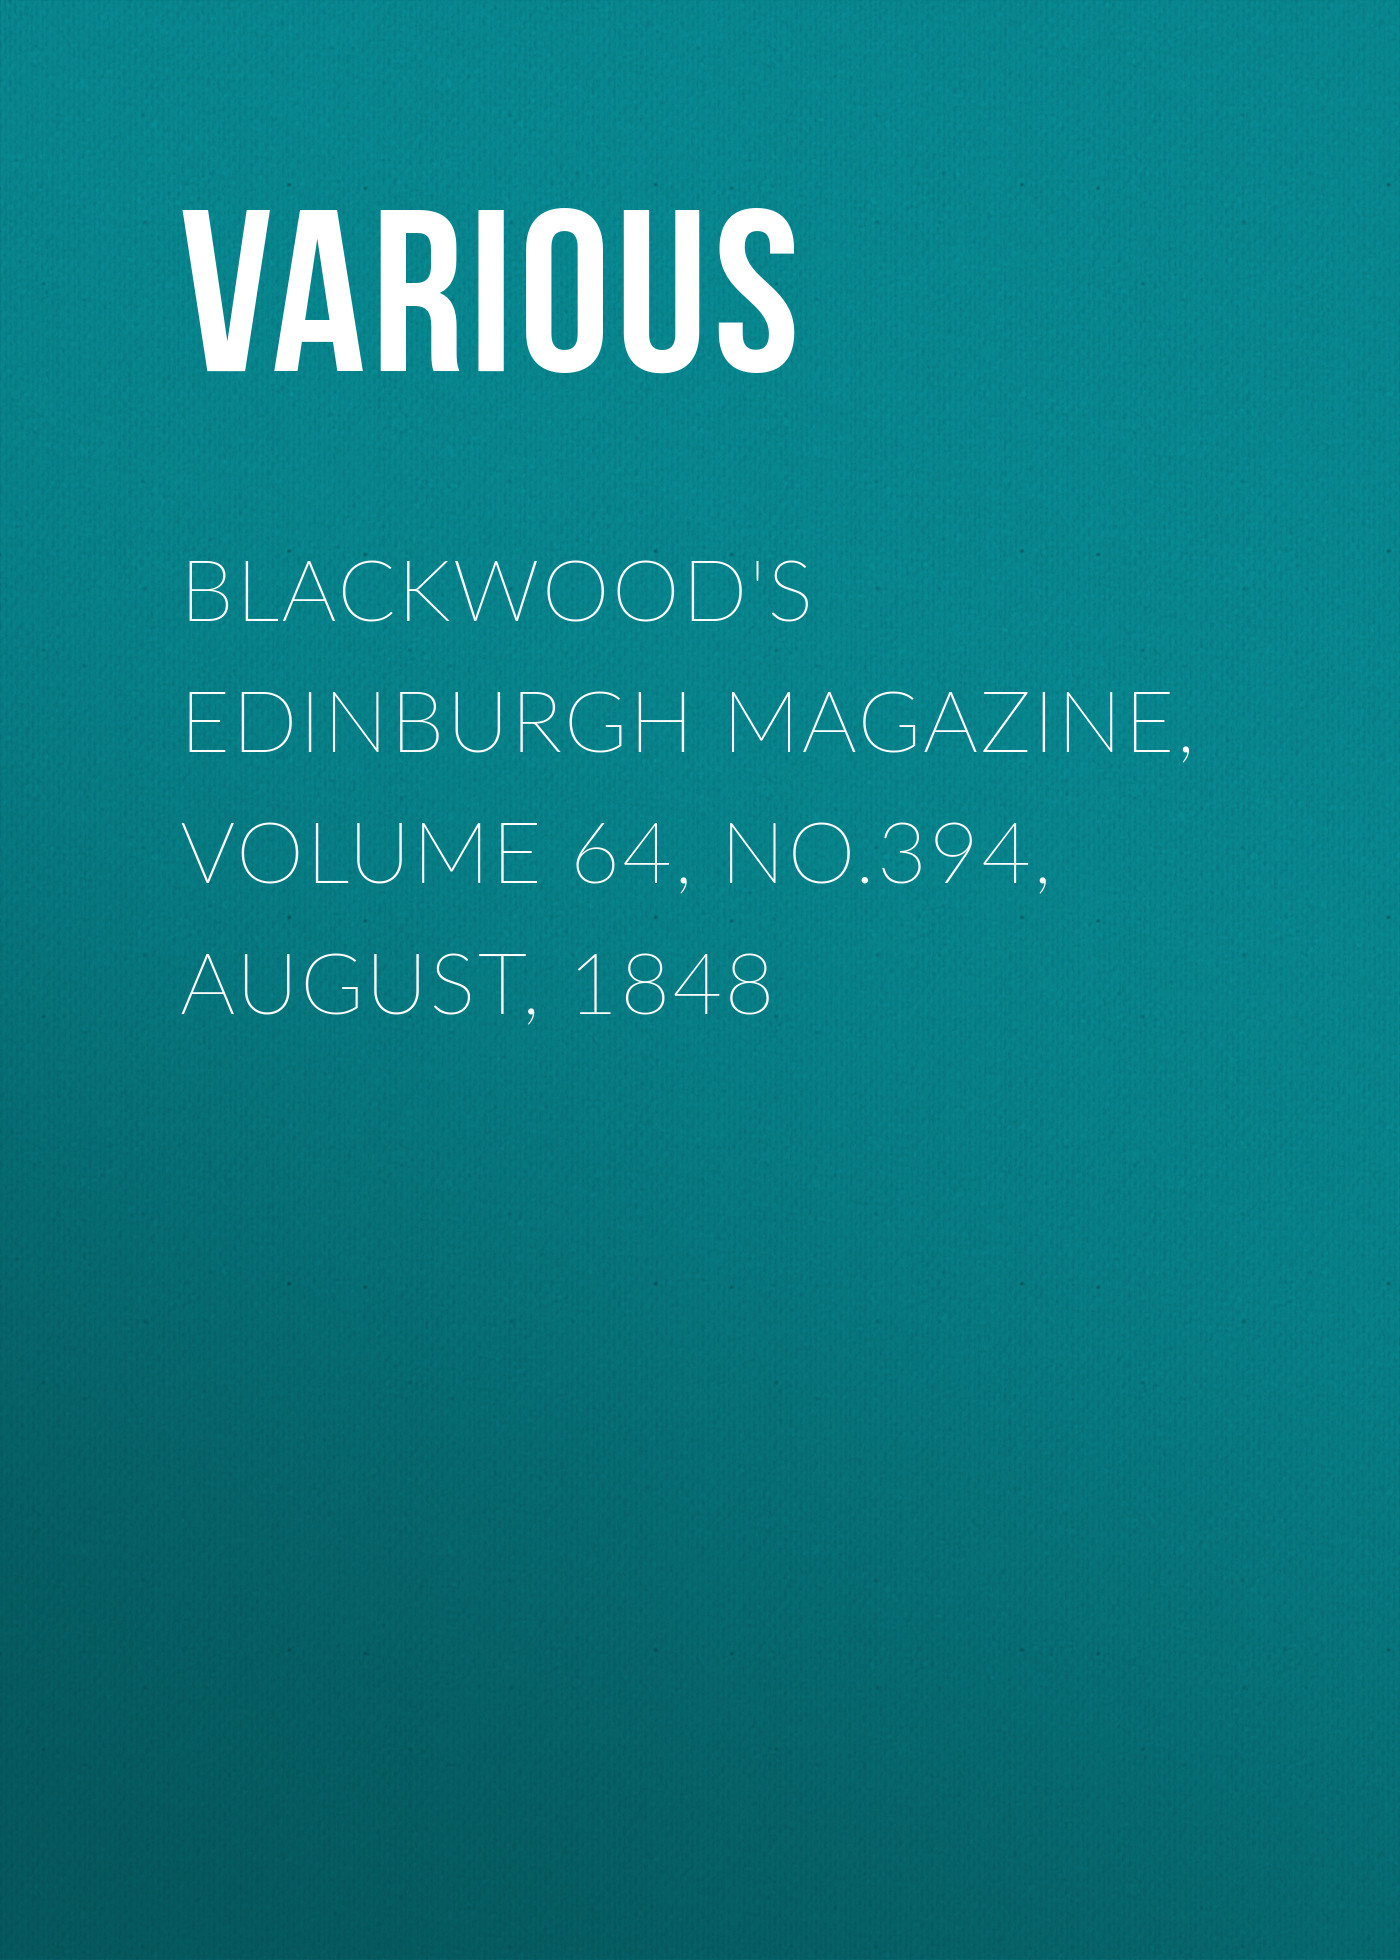 Книга Blackwood's Edinburgh Magazine, Volume 64, No.394, August, 1848 из серии , созданная  Various, может относится к жанру Журналы, Зарубежная образовательная литература, Книги о Путешествиях. Стоимость электронной книги Blackwood's Edinburgh Magazine, Volume 64, No.394, August, 1848 с идентификатором 25569519 составляет 0 руб.